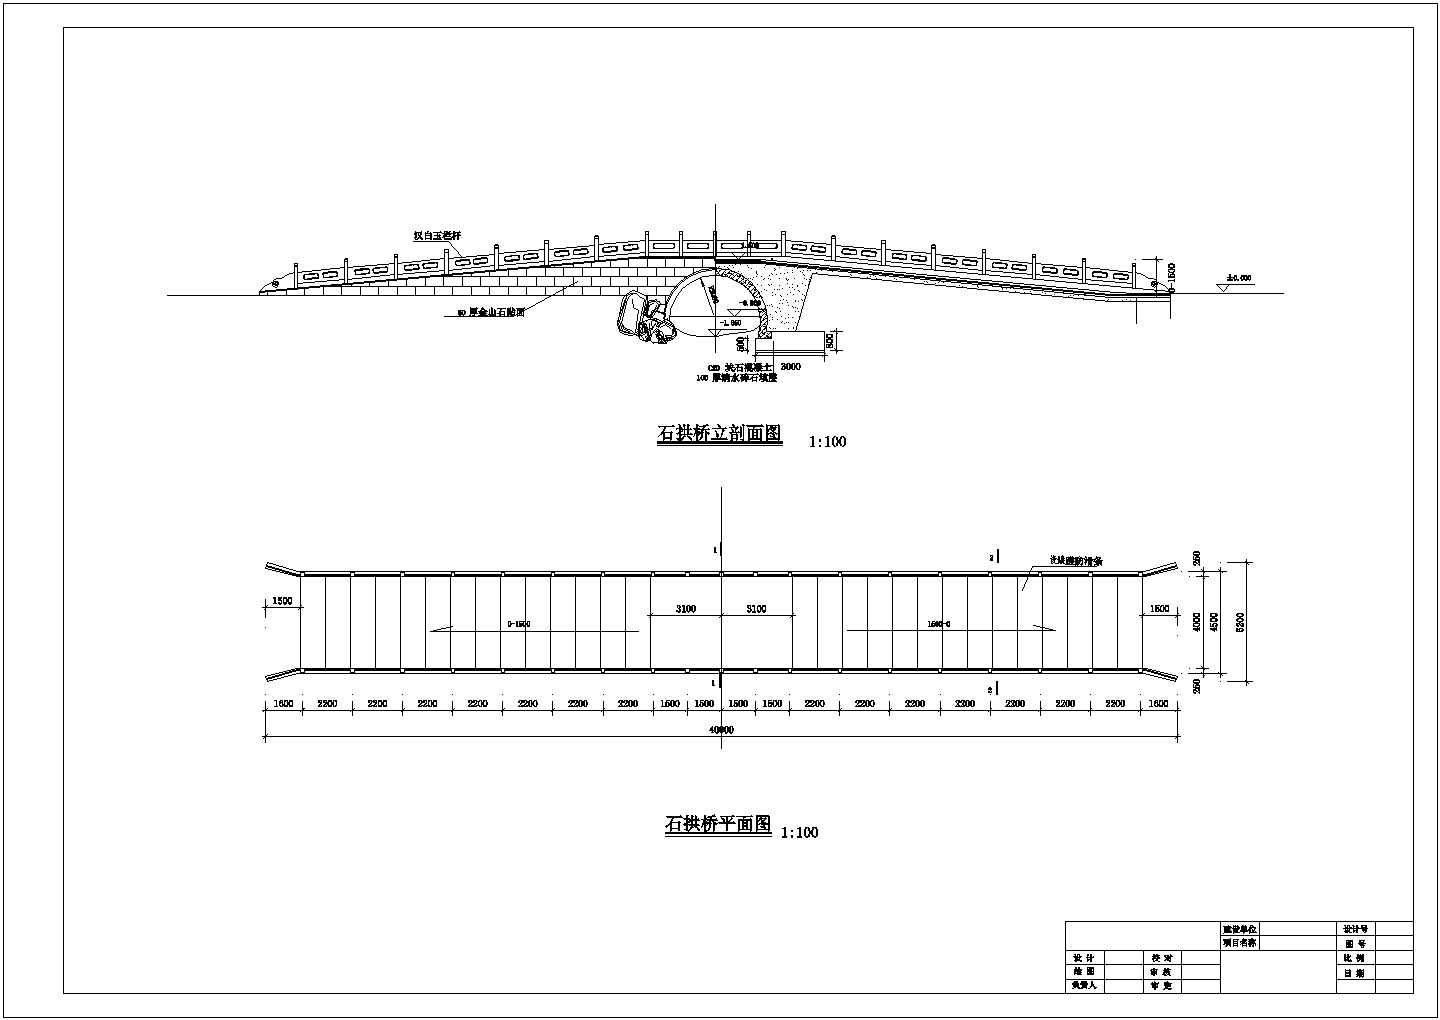 石拱桥完整的全套cad设计施工图. 